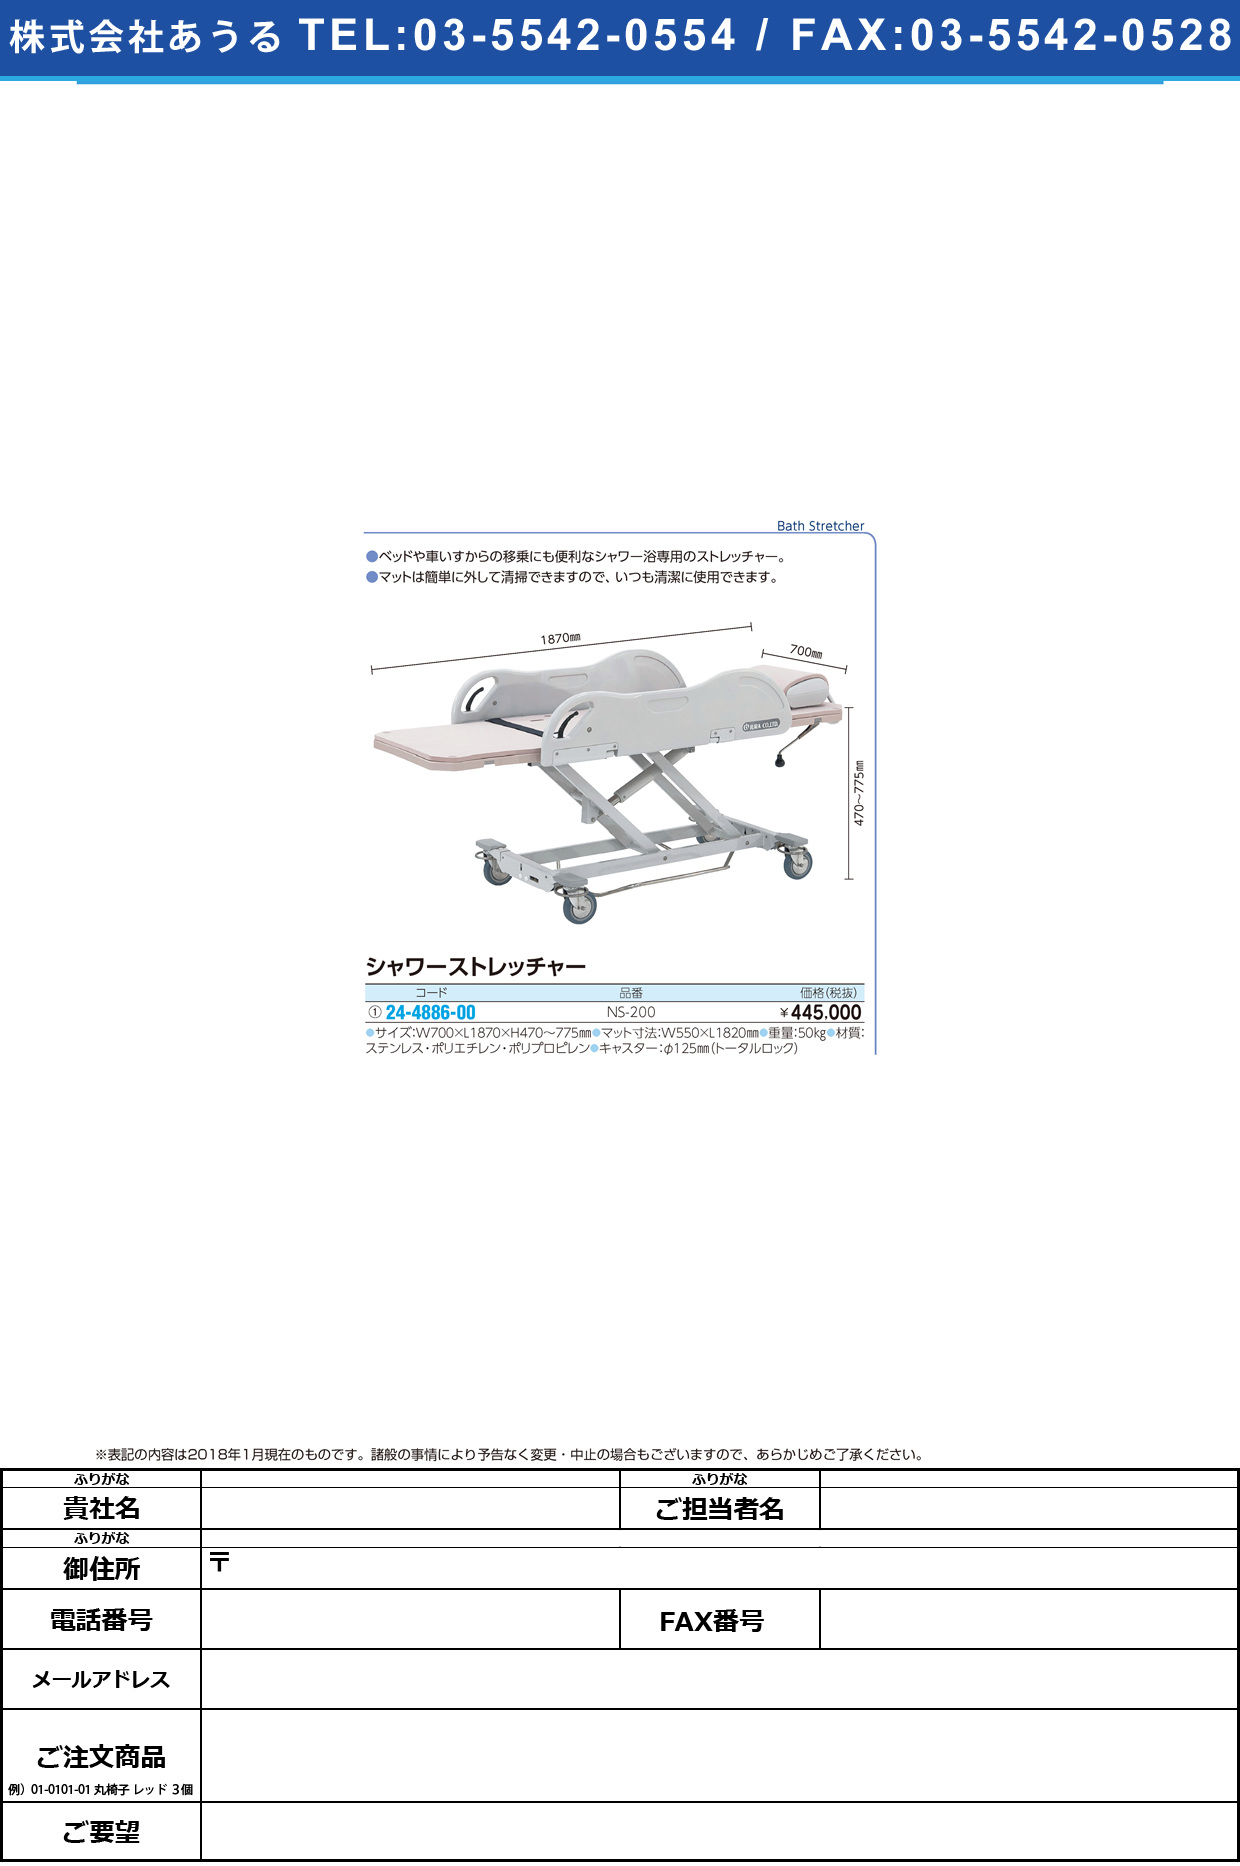 (24-4886-00)シャワーストレッチャー NS-200 ｼｬﾜｰｽﾄﾚｯﾁｬｰ(いうら)【1台単位】【2018年カタログ商品】